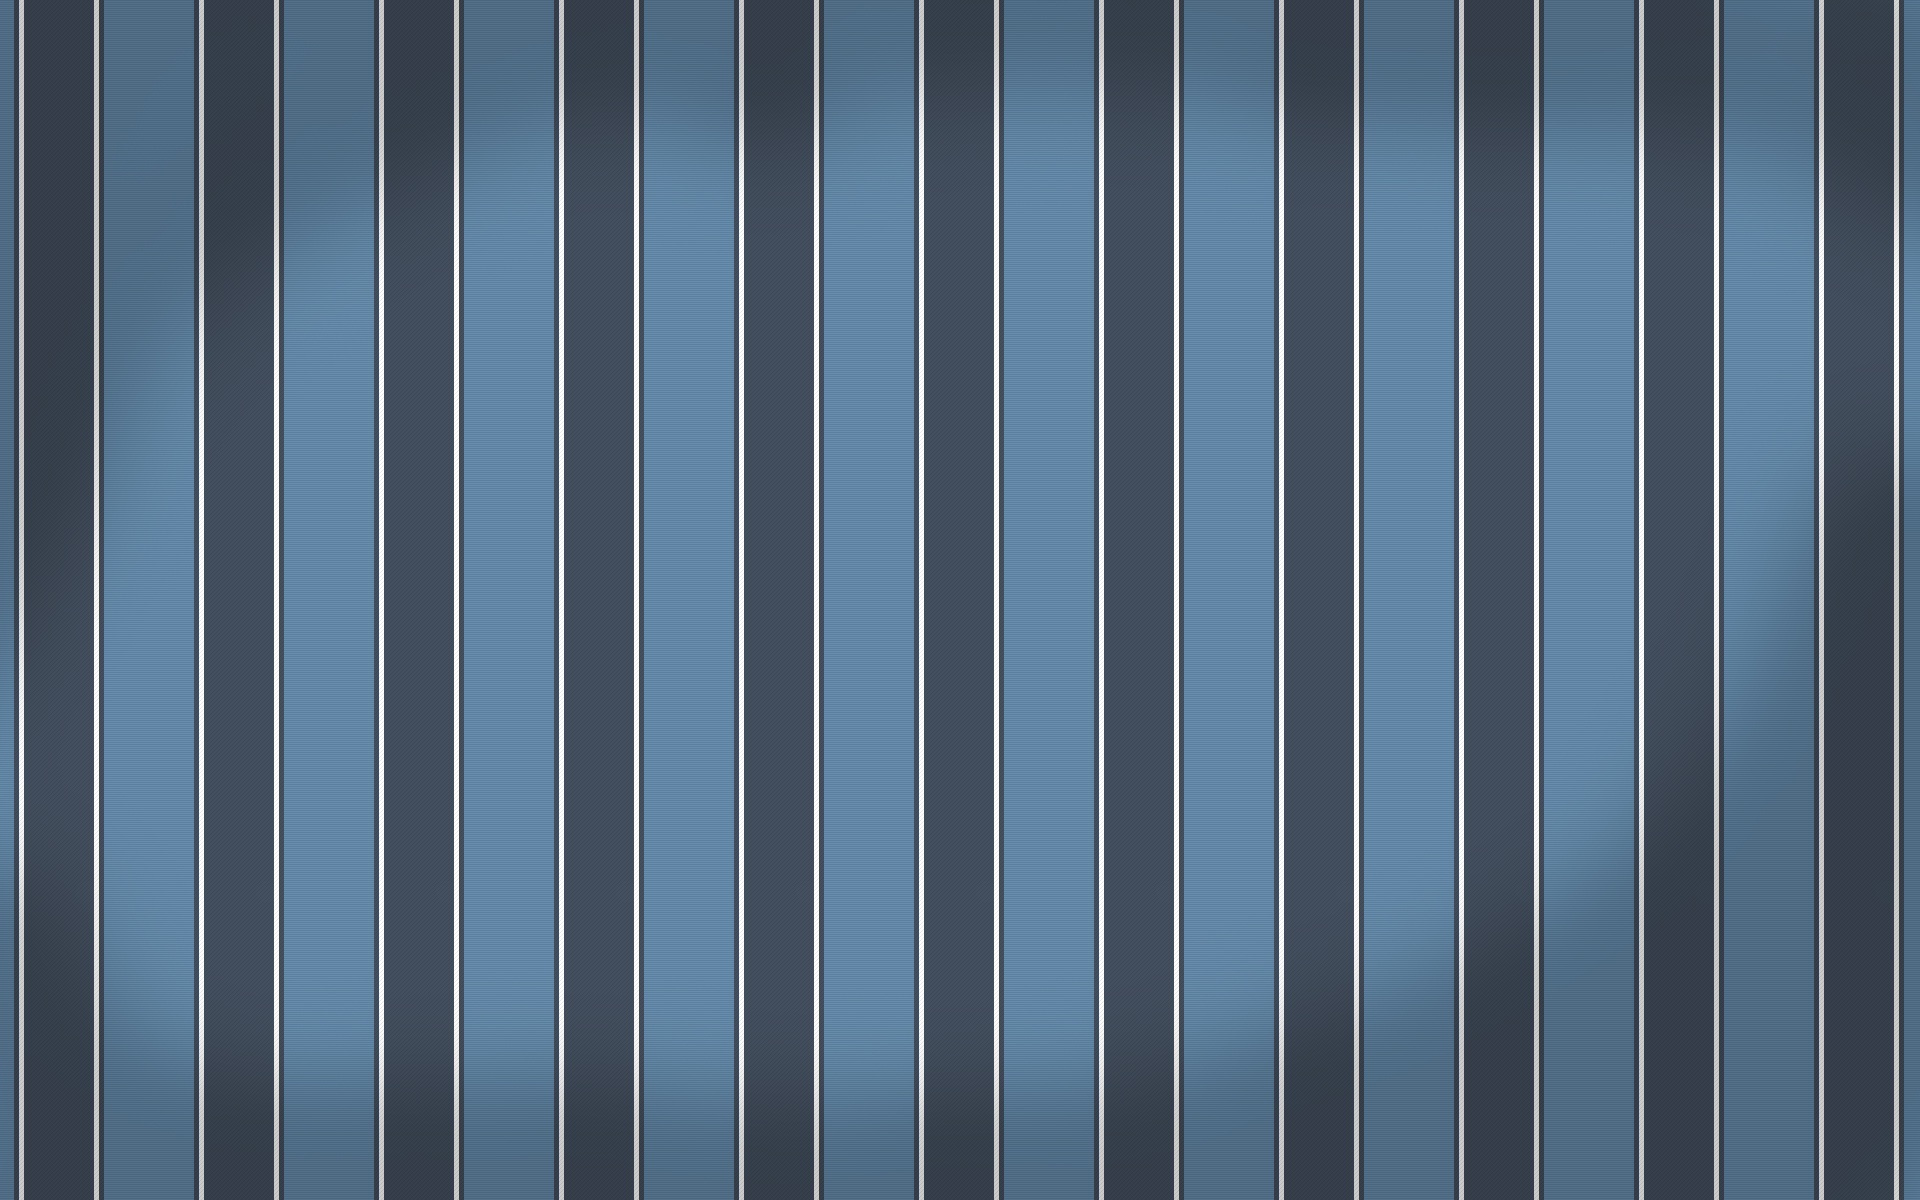 Striped Wallpaper Themebin